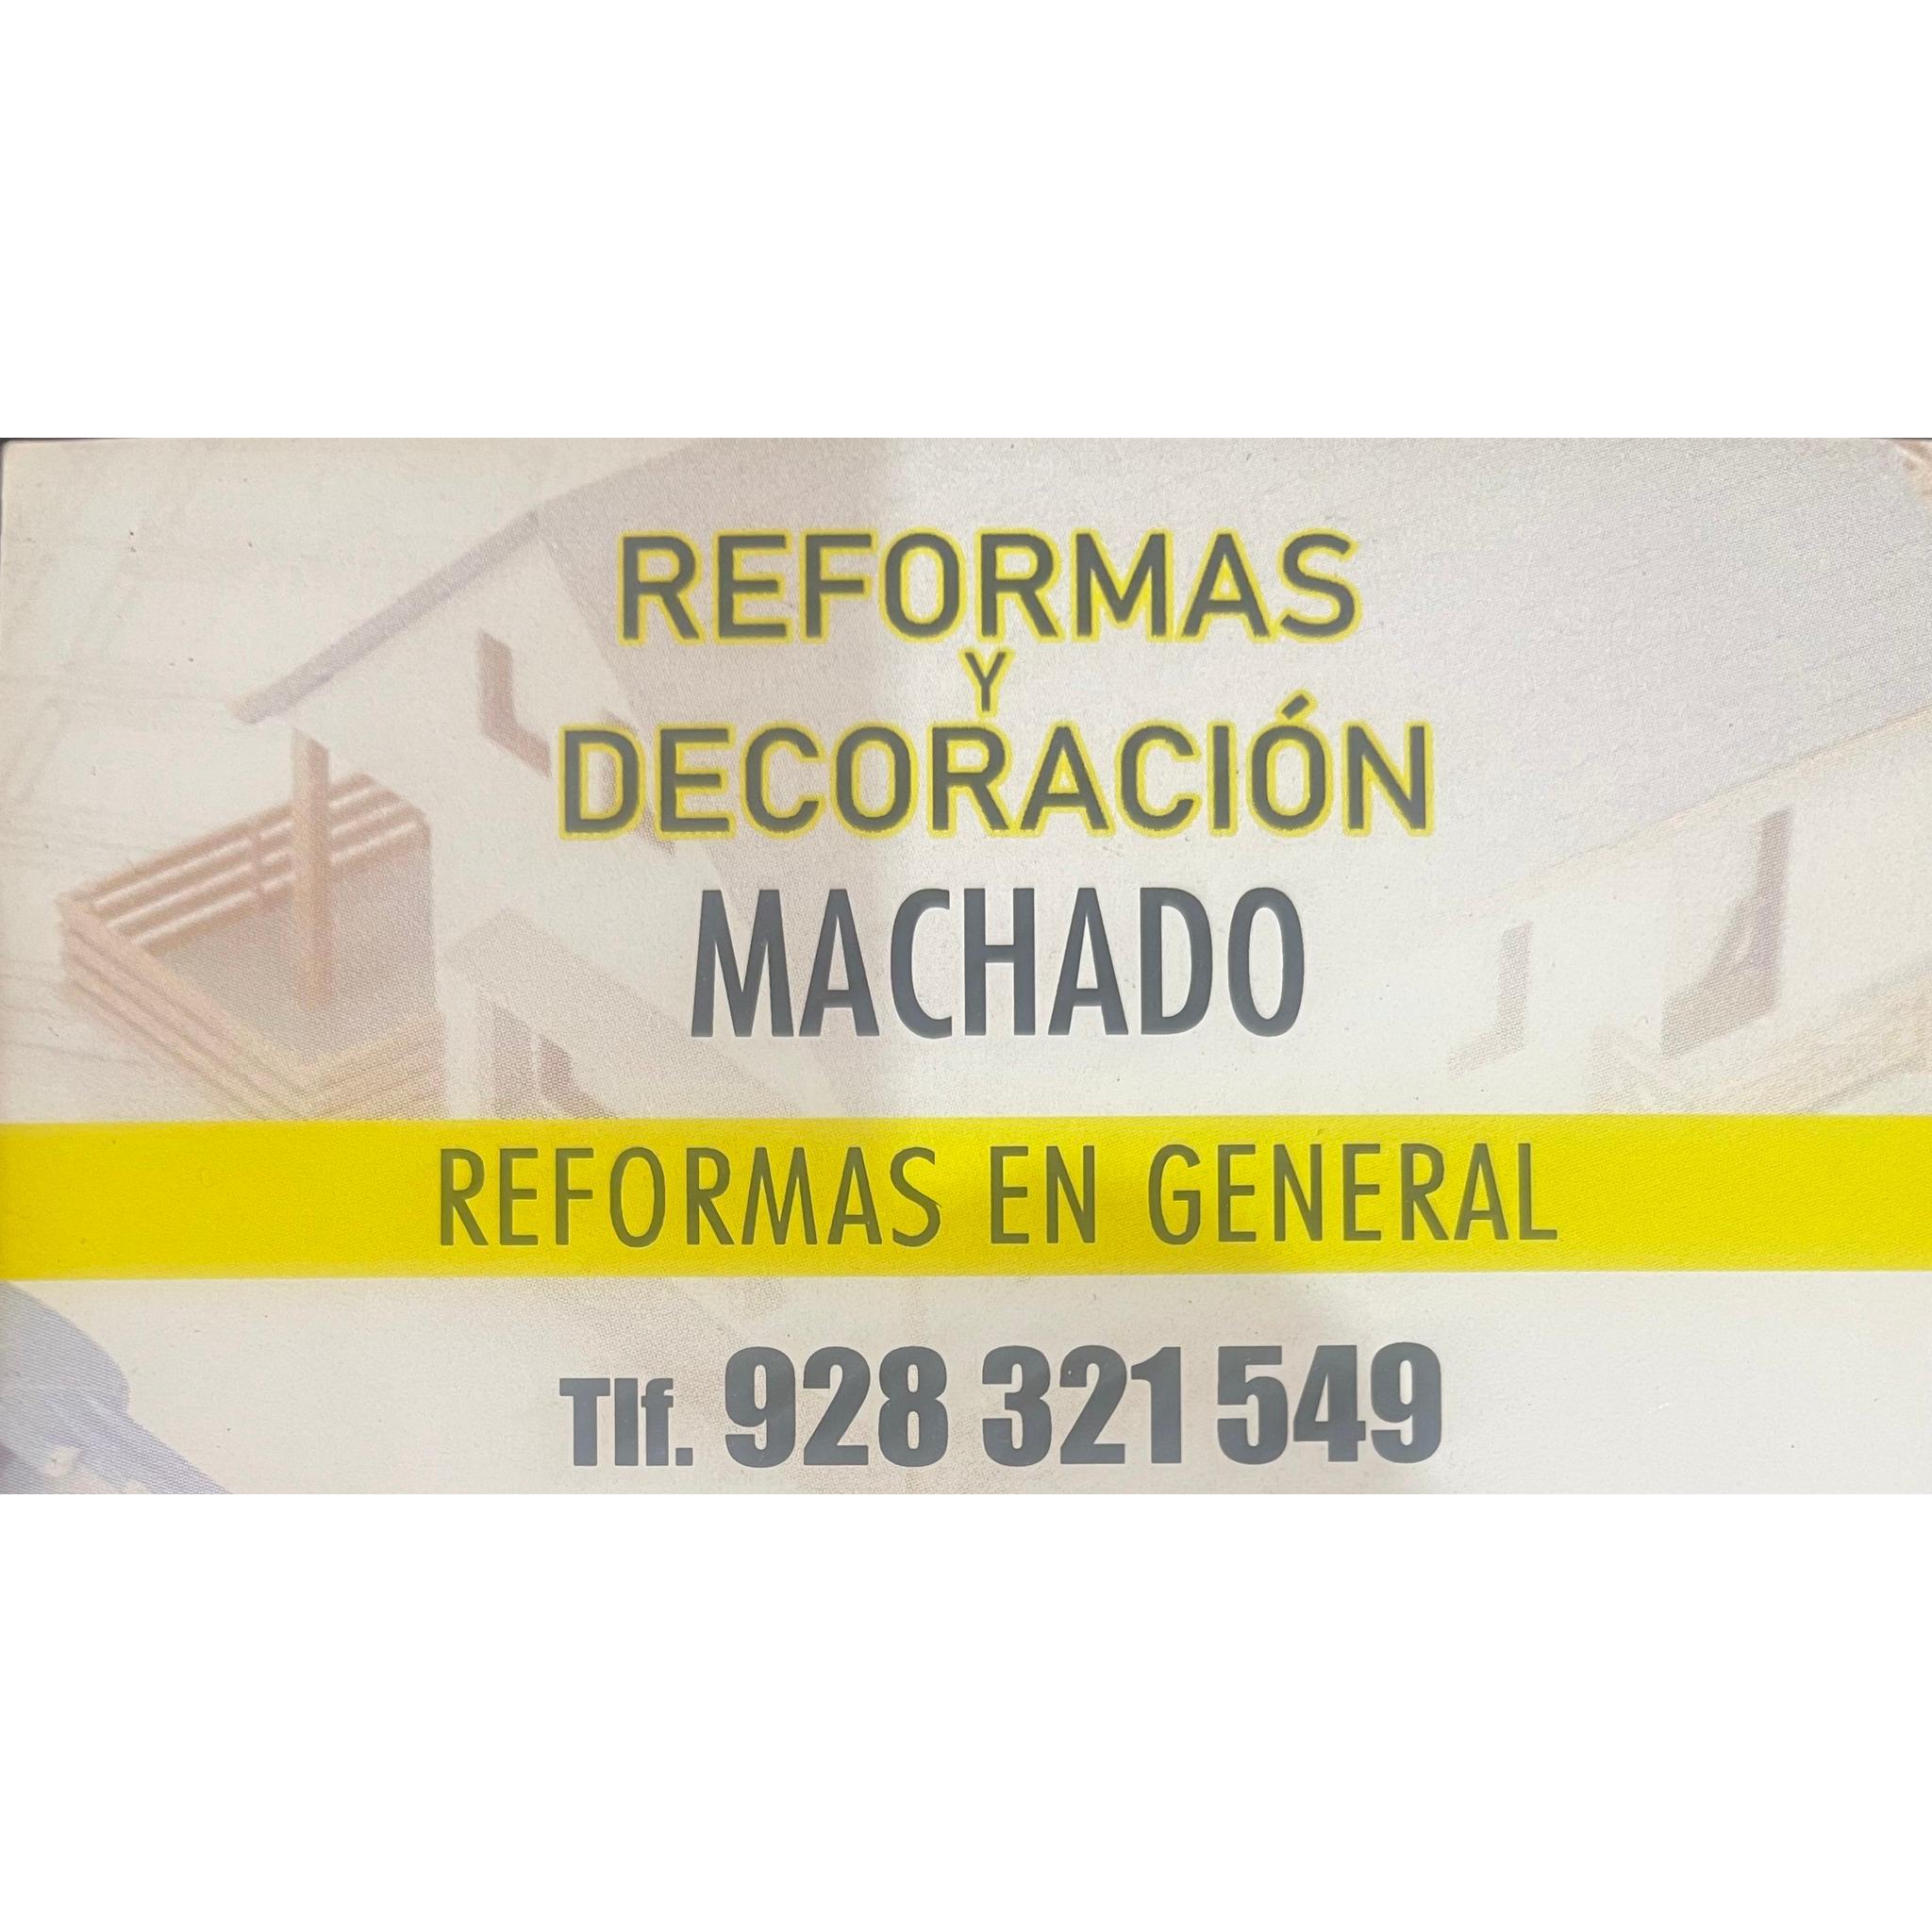 Reformas y Decoración Machado Las Palmas de Gran Canaria